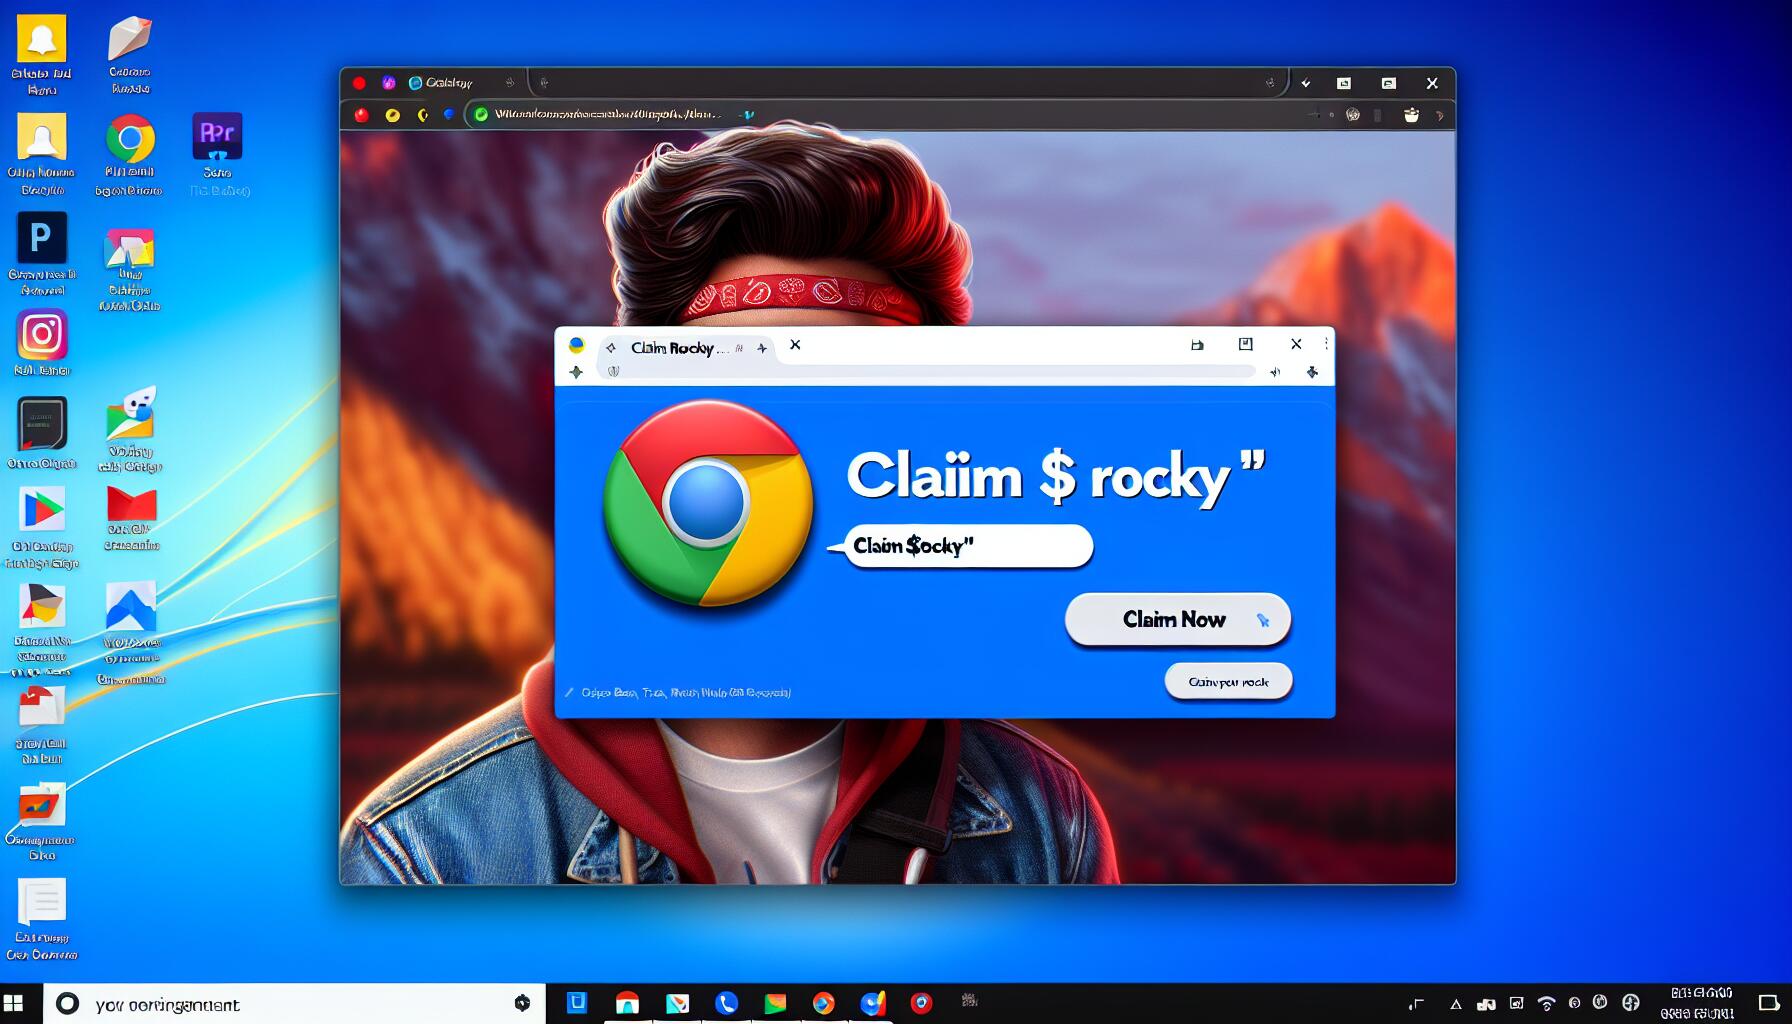 claim $rocky ads